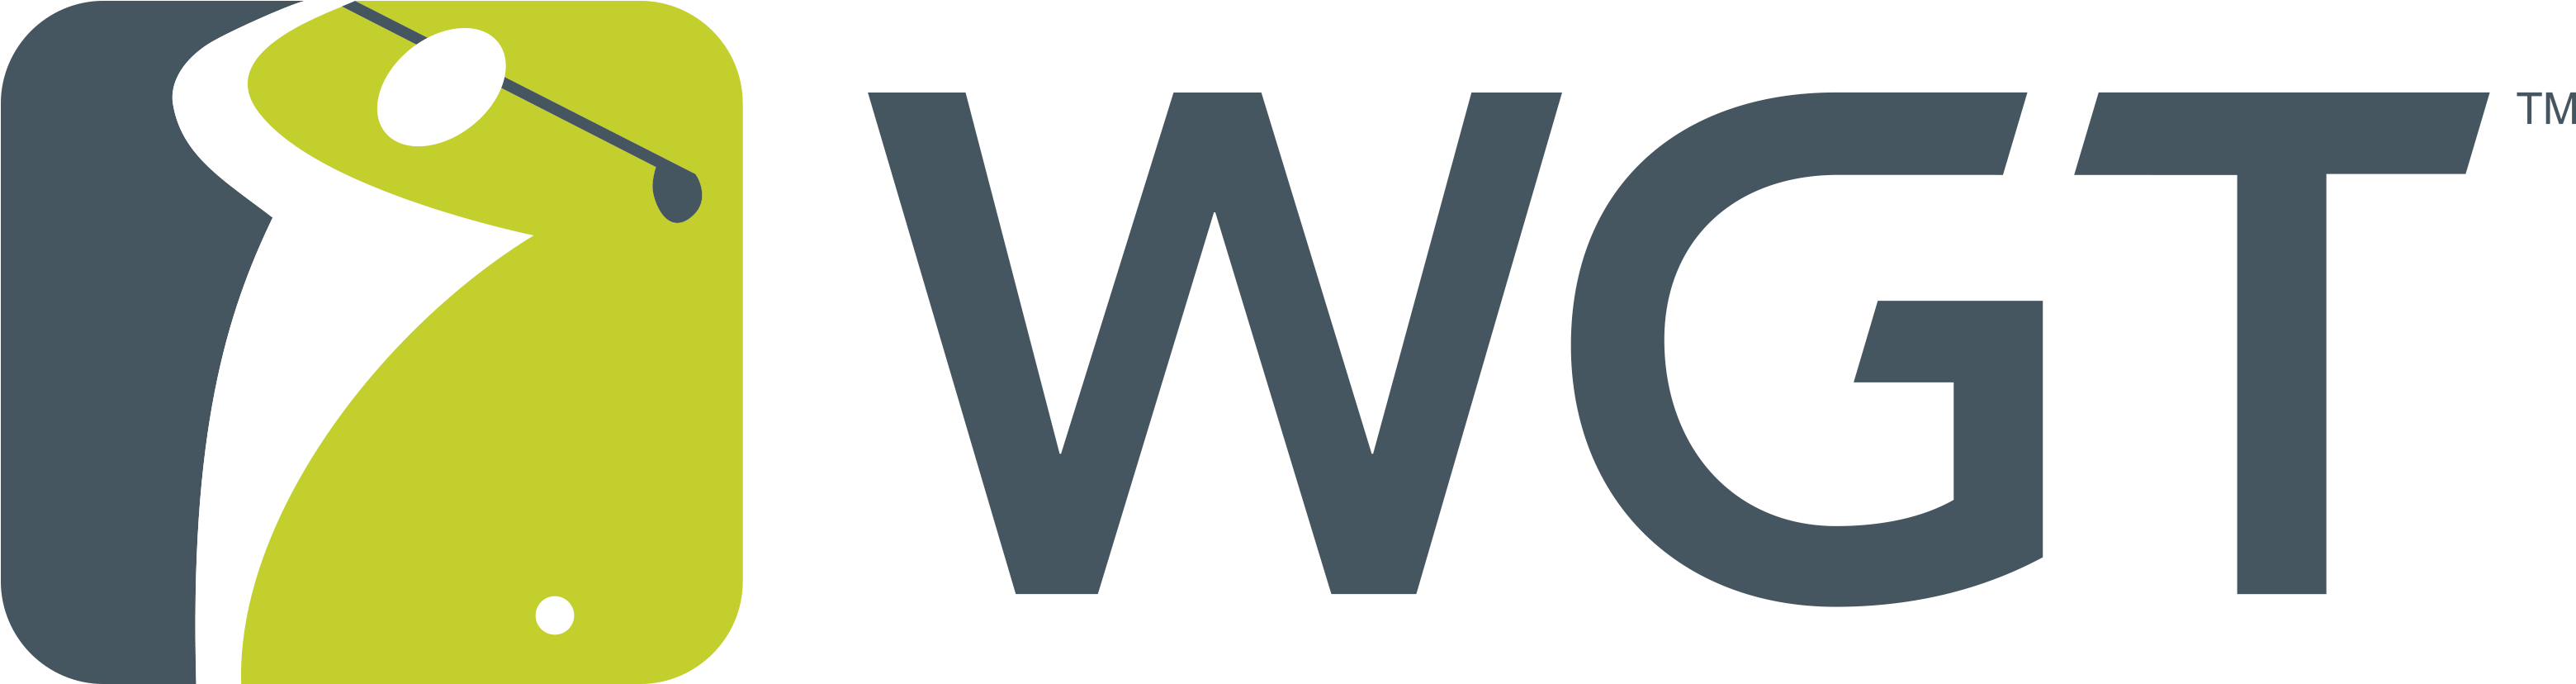 World Golf Tour Logo (4050x2025)